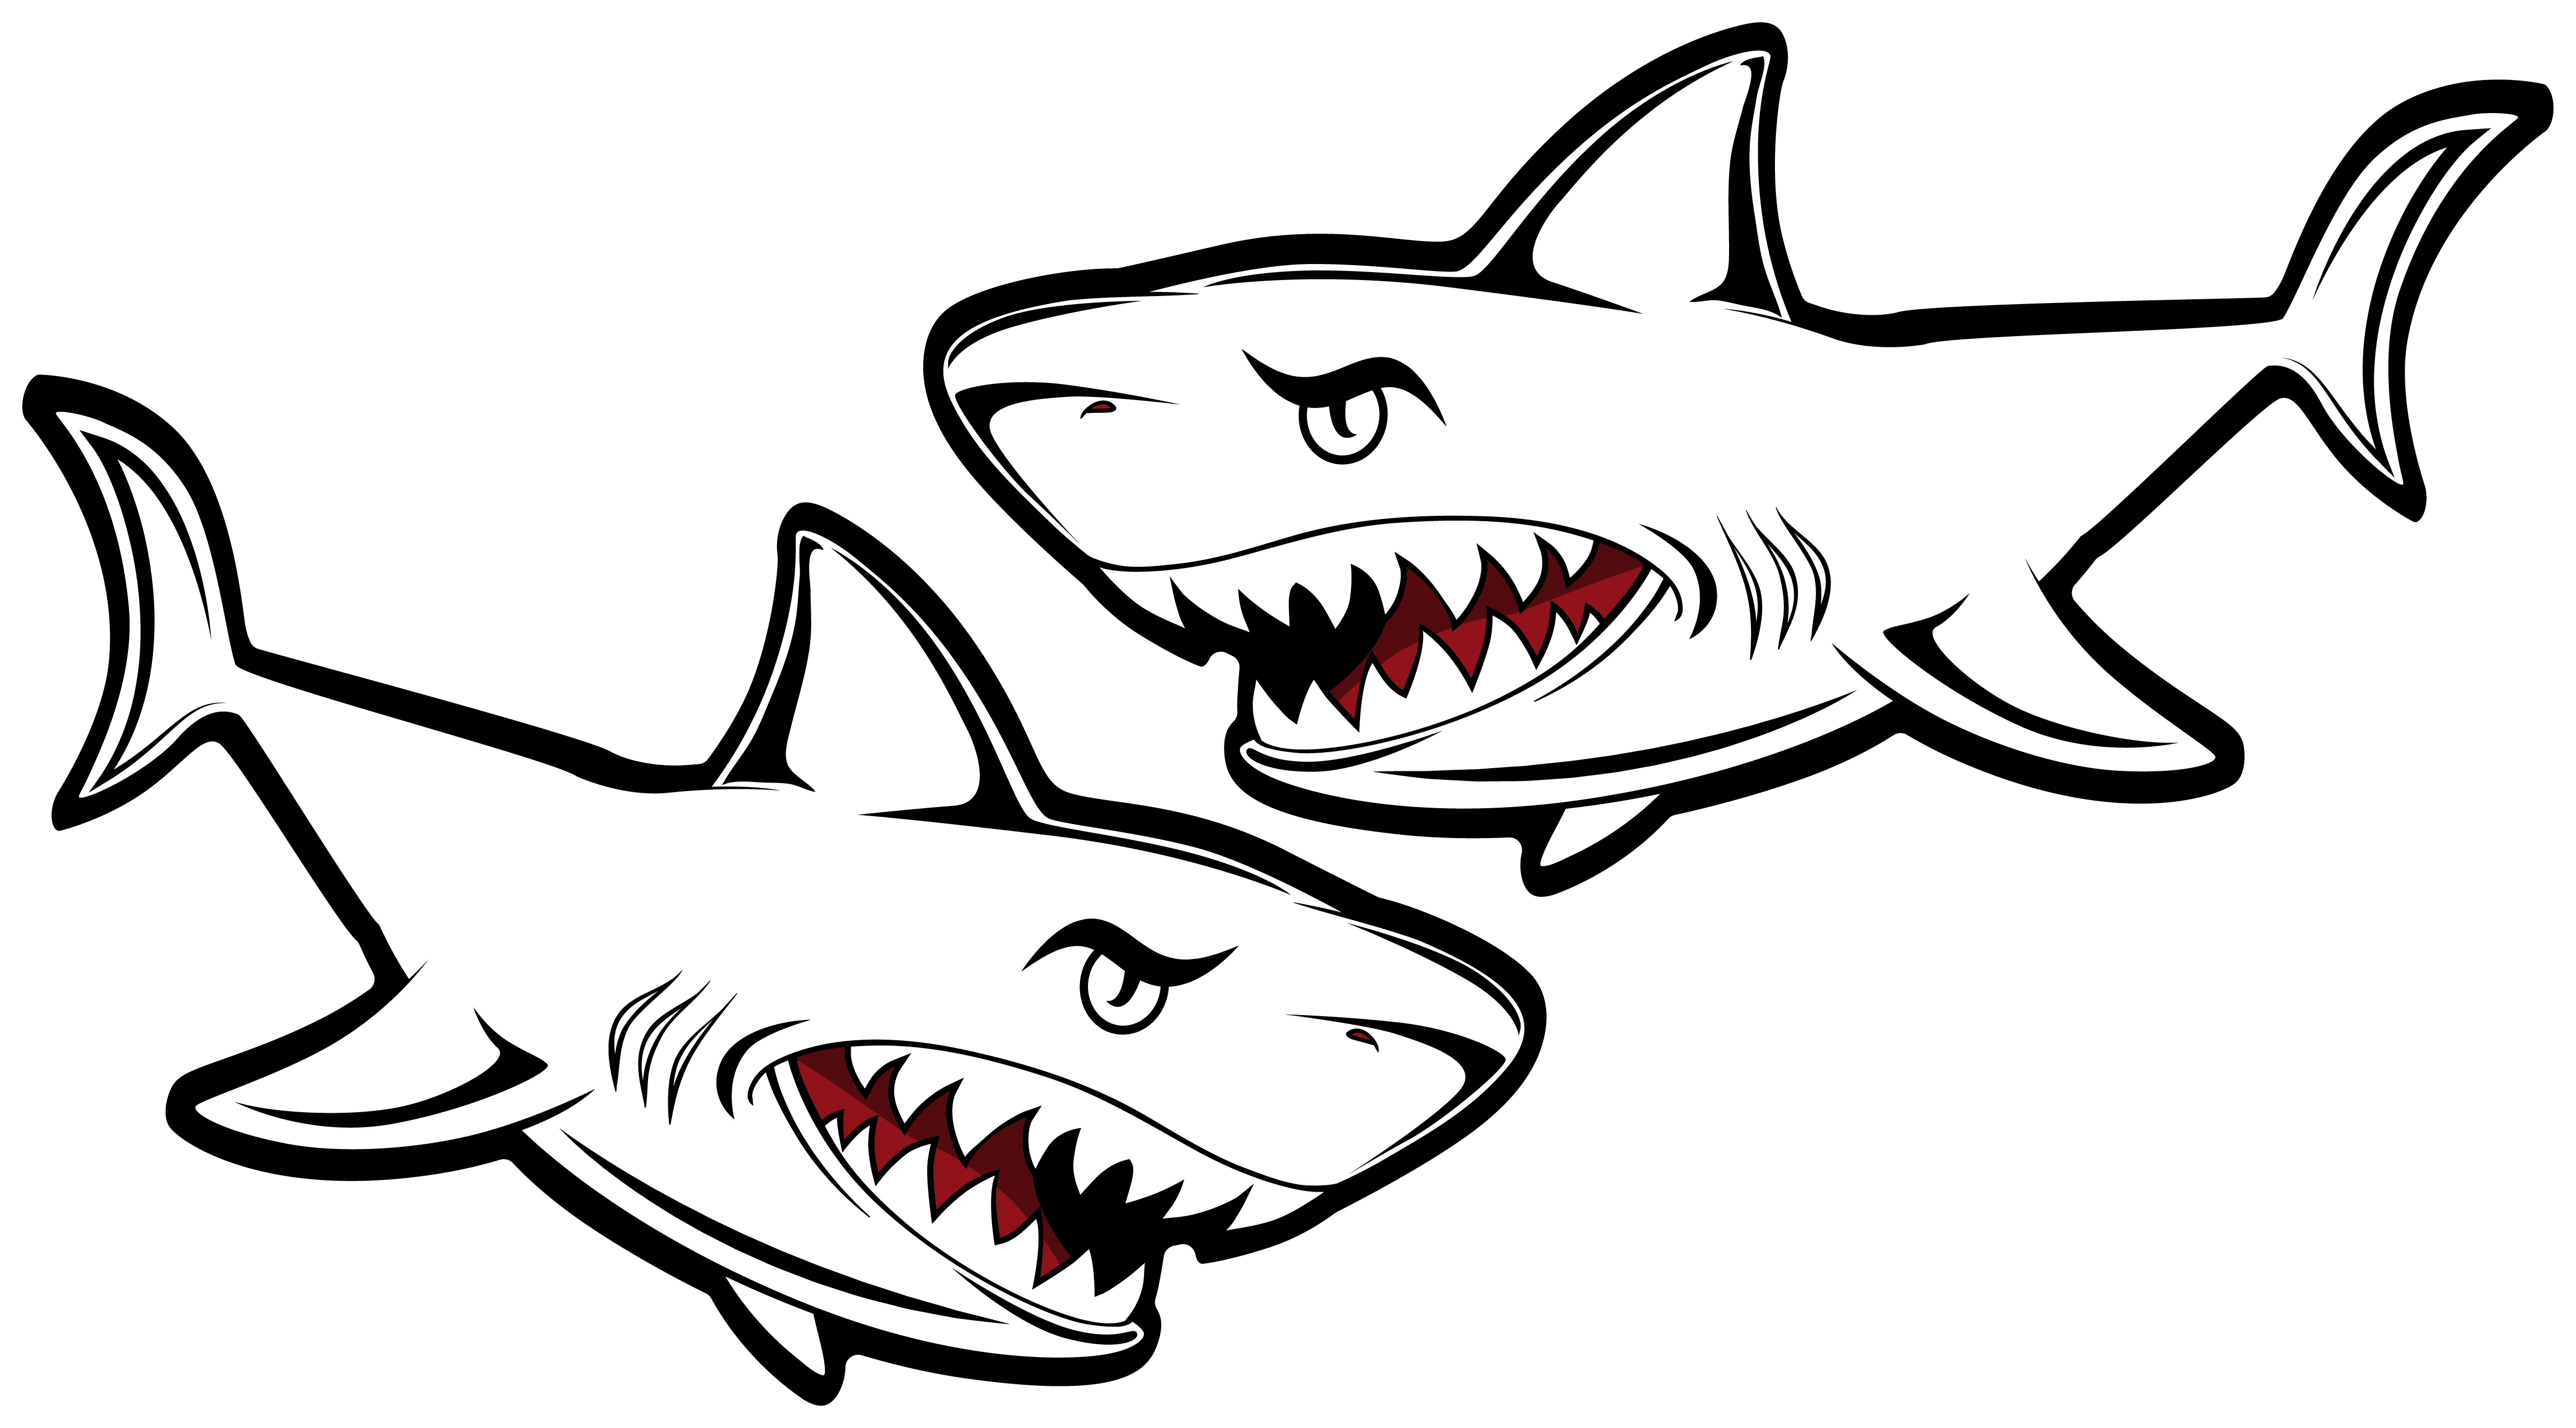 Aufkleber Shark Hai 120x70 cm für Auto KFZ Haifisch Sticker Wandtattoo